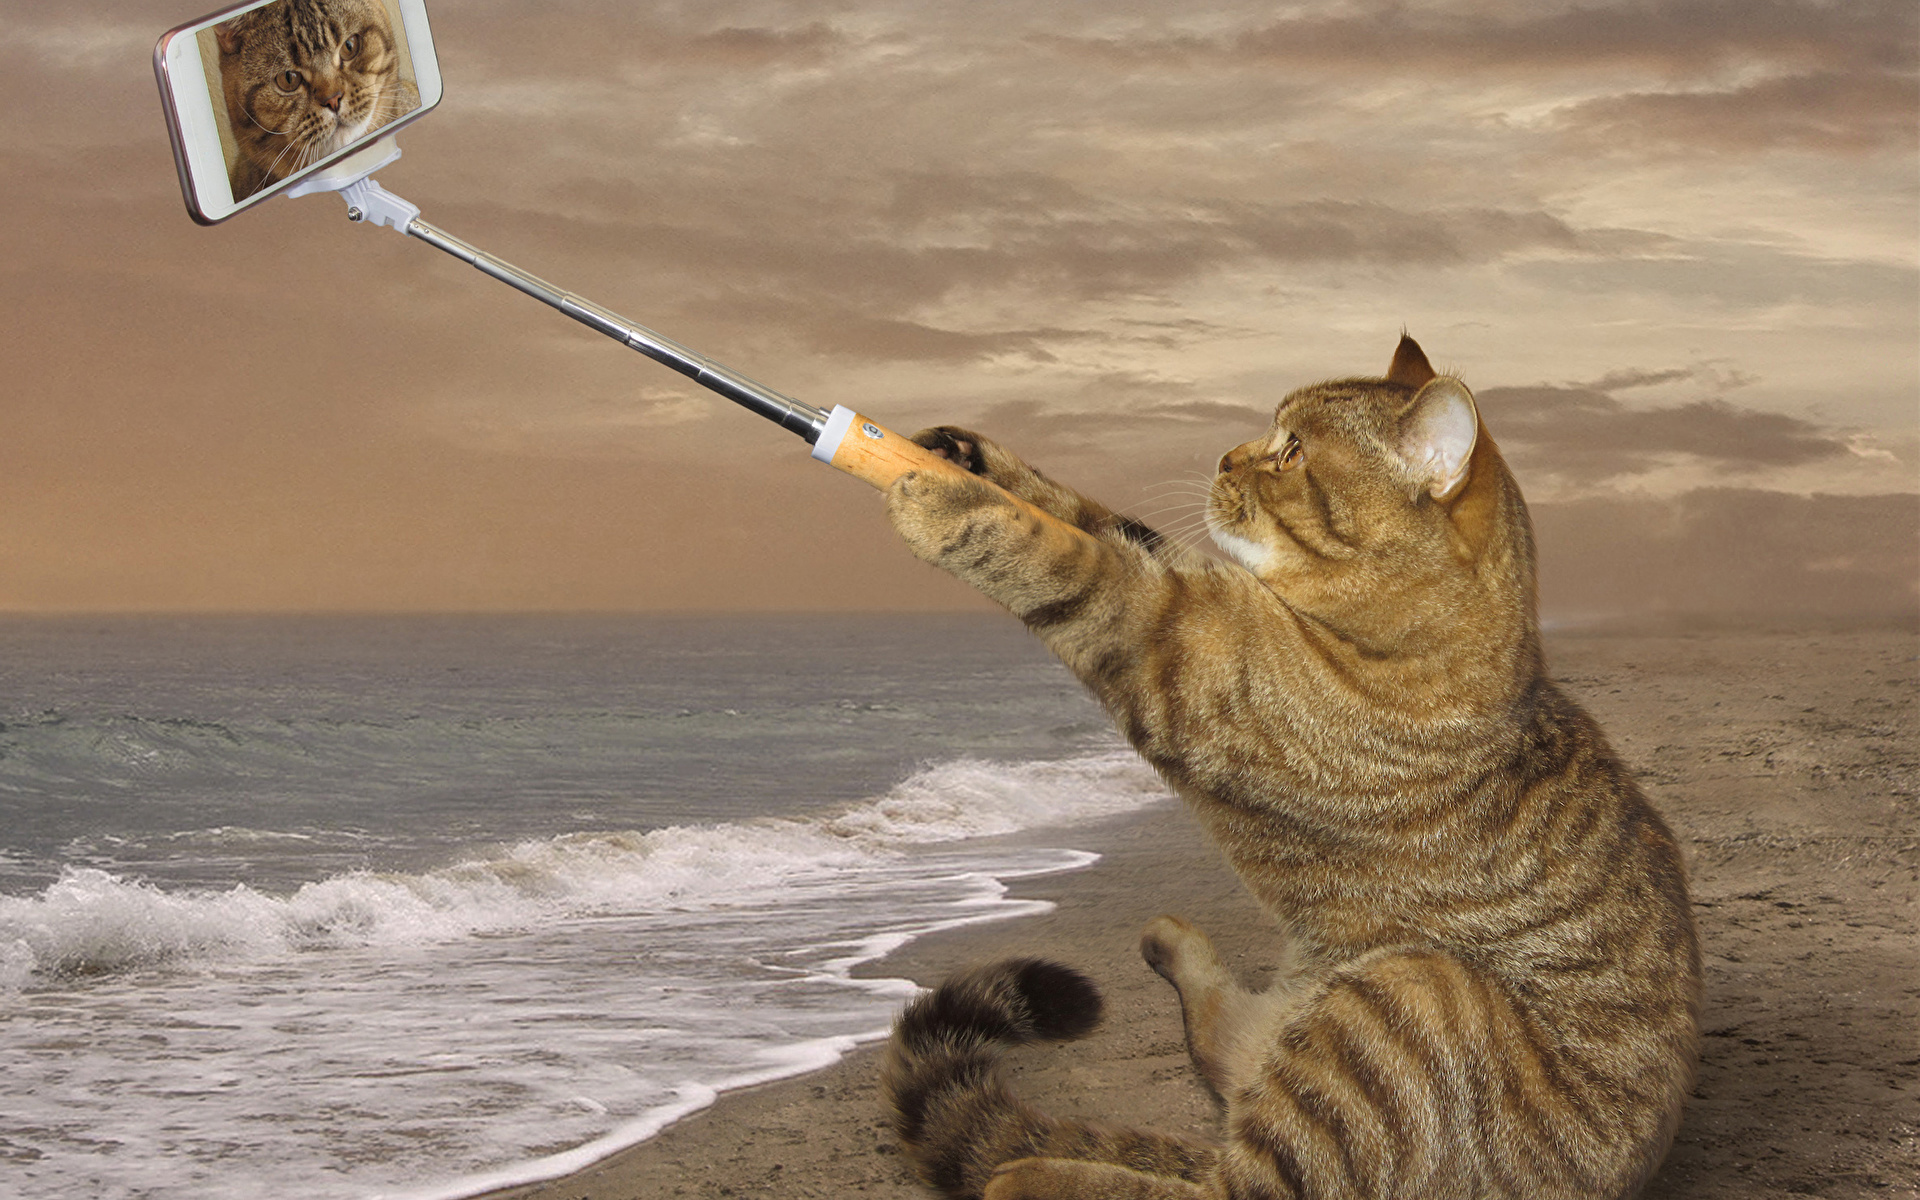 壁紙 19x10 クリエイティブ 飼い猫 海岸 おもしろい スマートフォン 座っ 自分撮り 動物 ダウンロード 写真